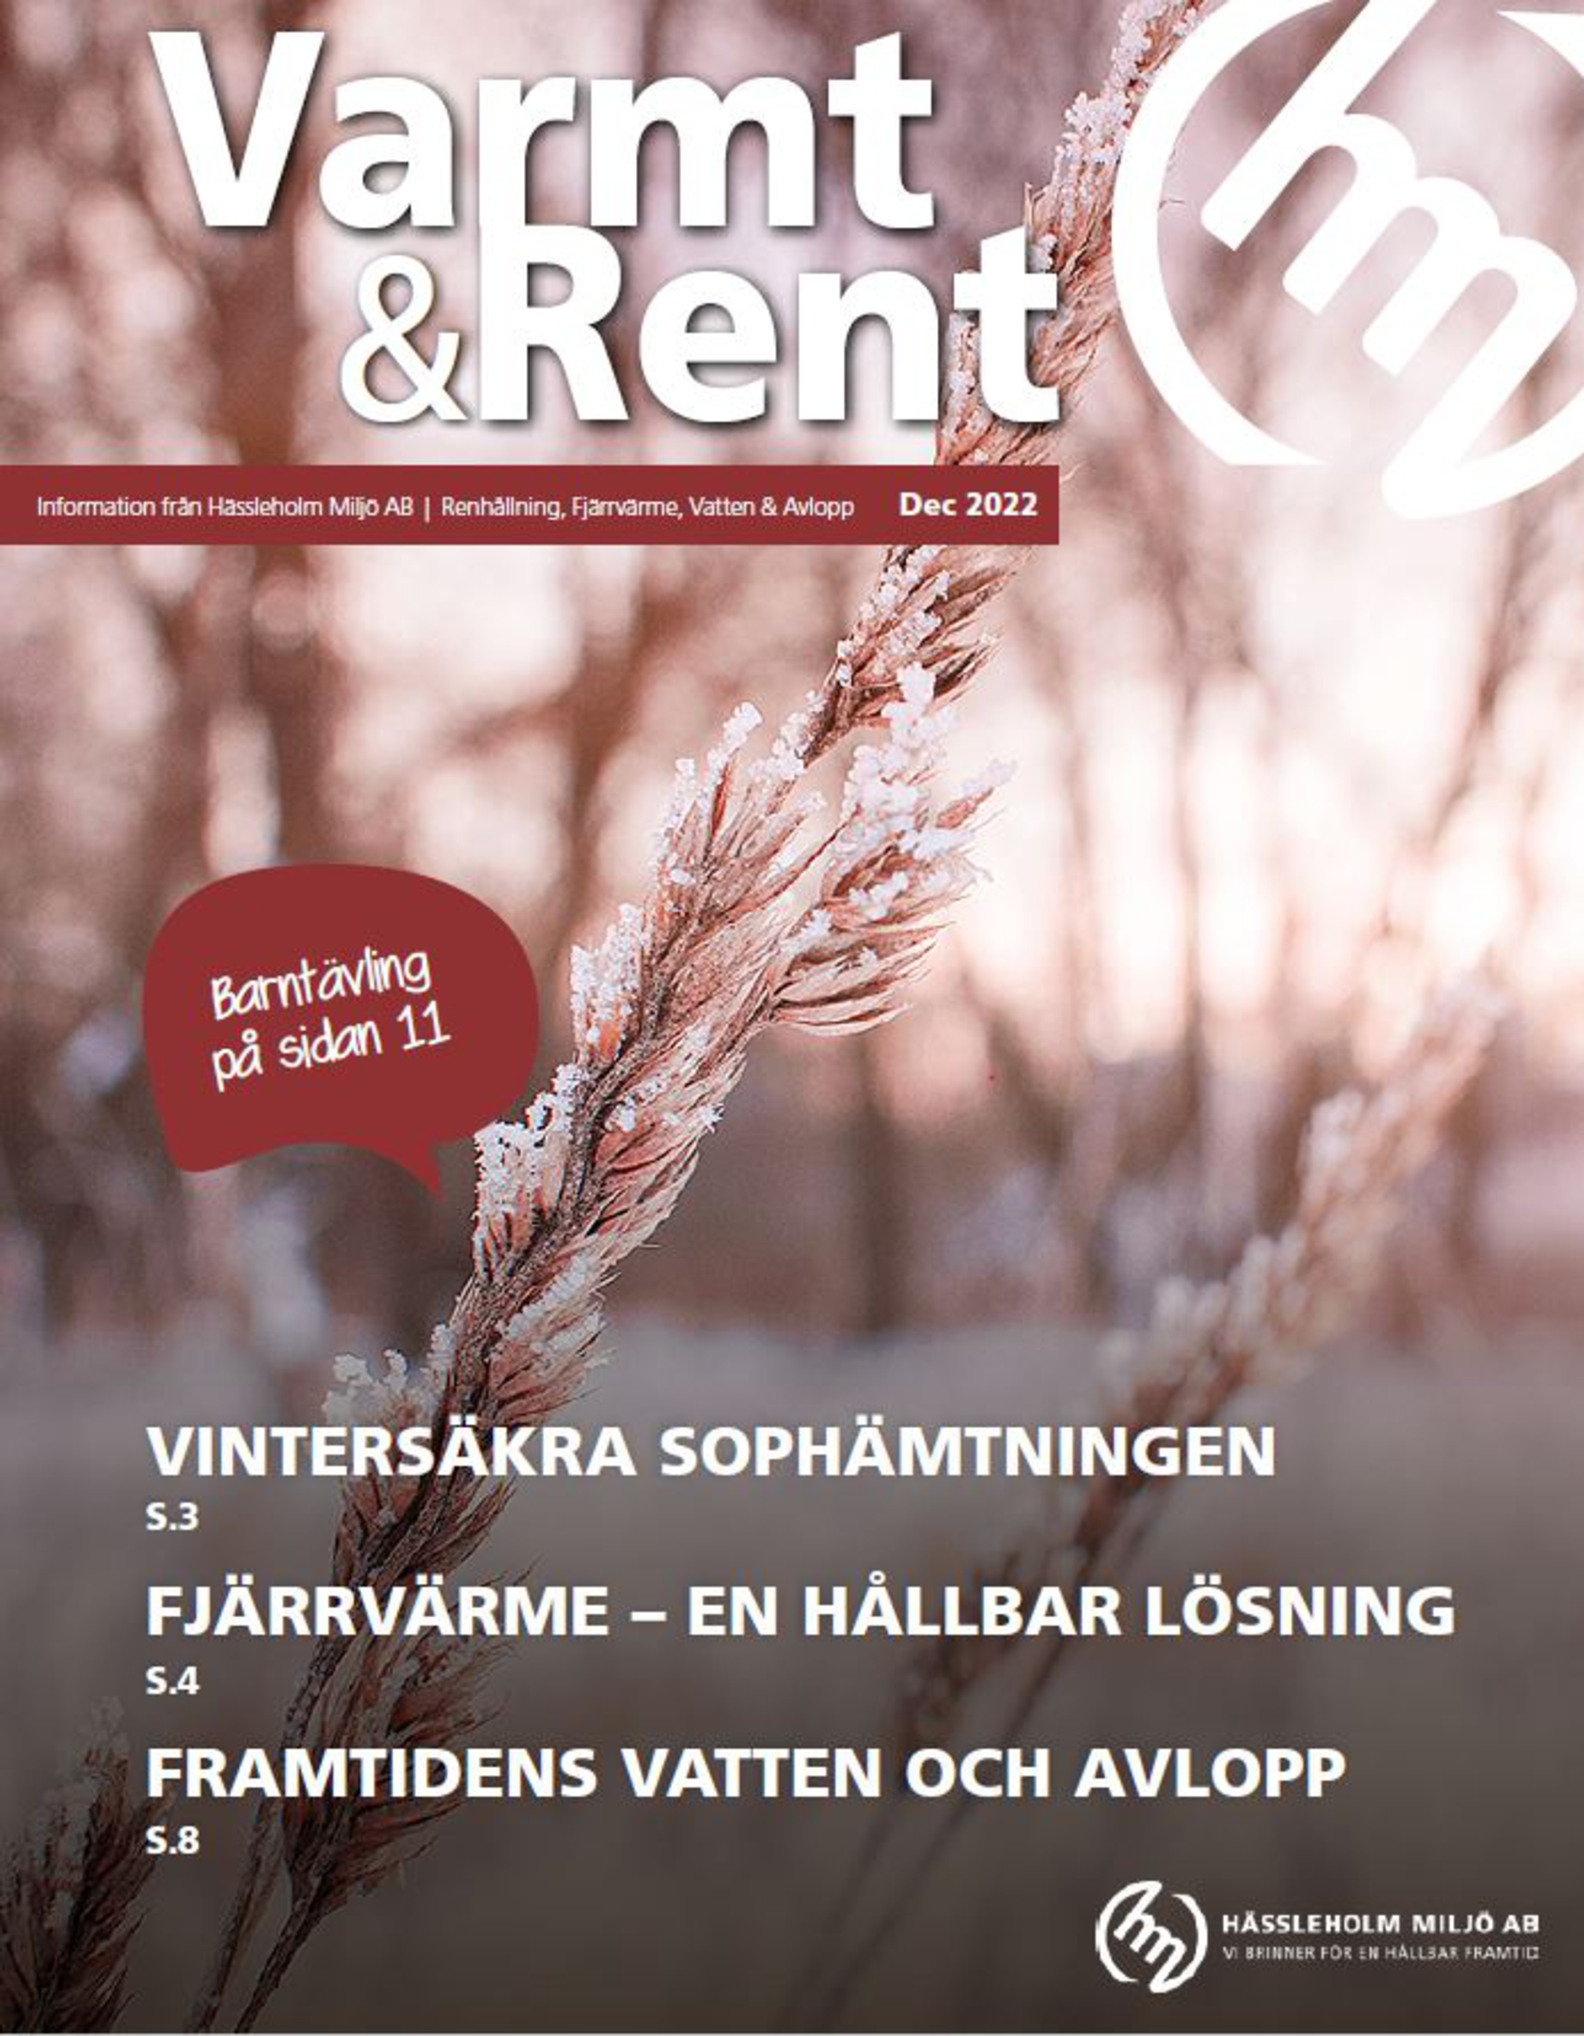 Framsida av Varmt&Rent, december 2022